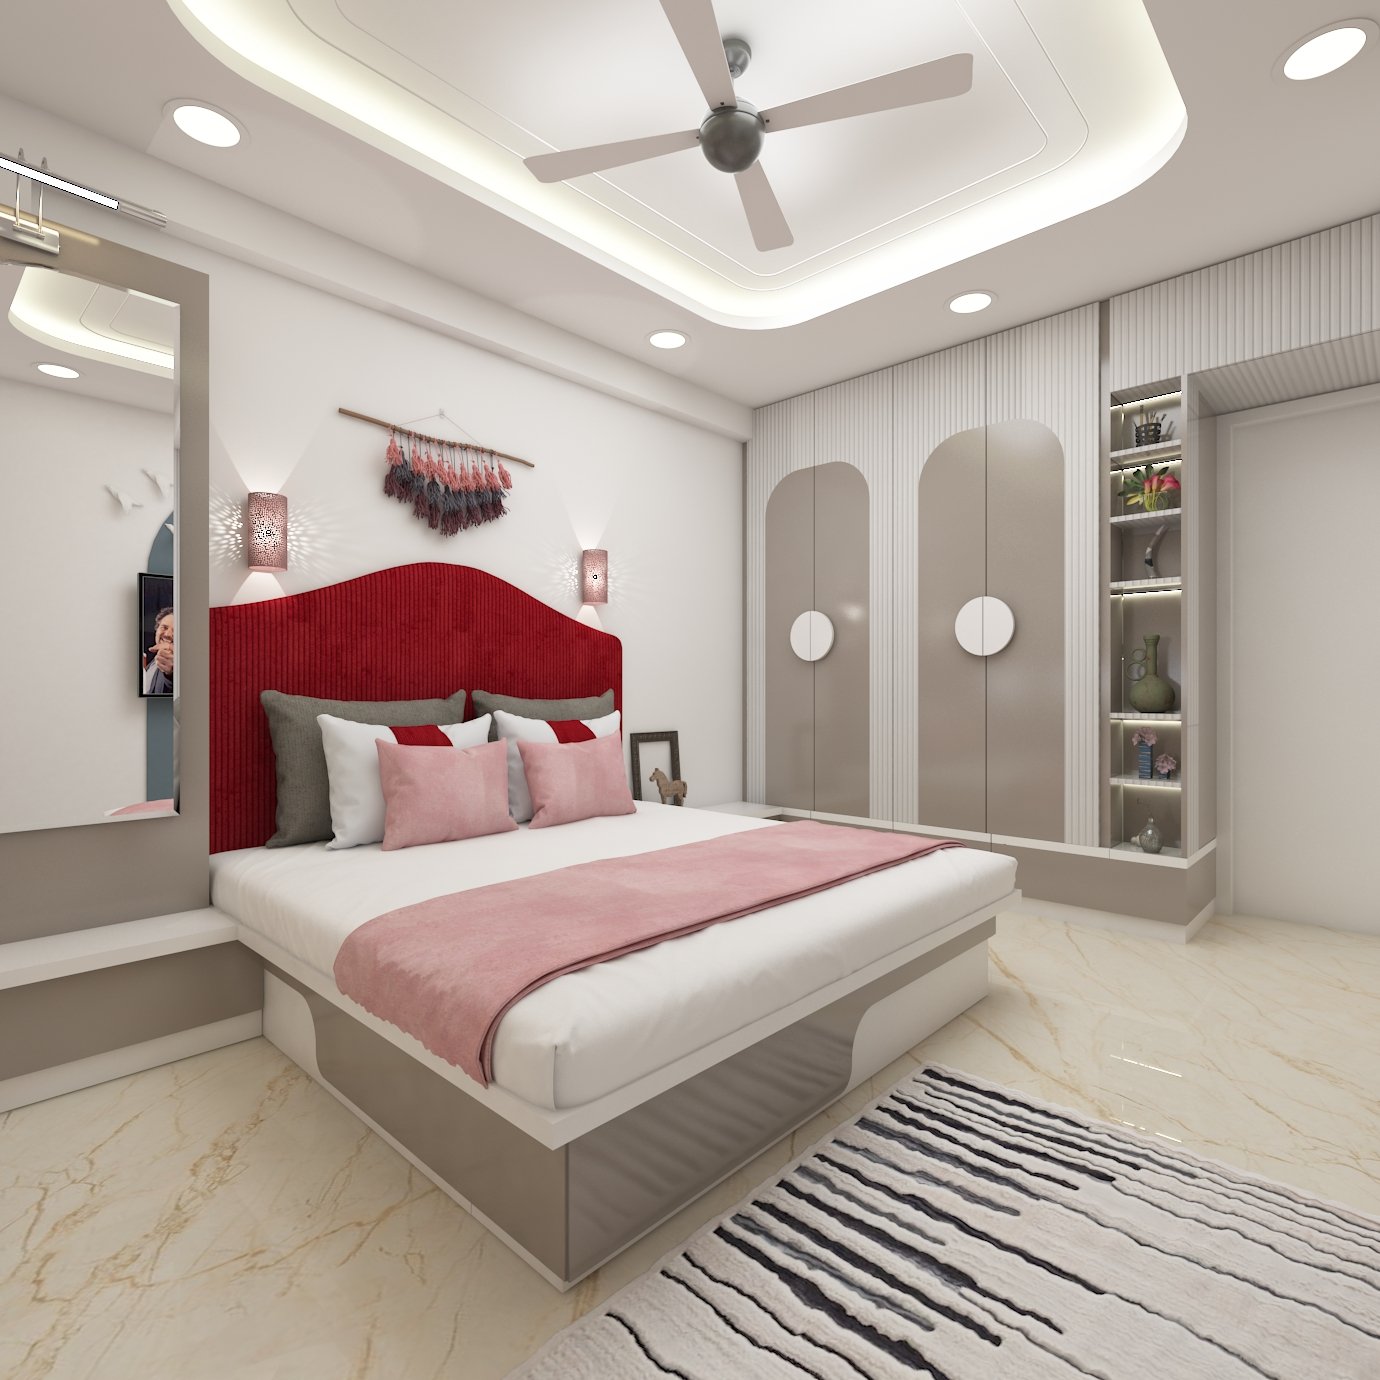 Indian bedroom interior design.